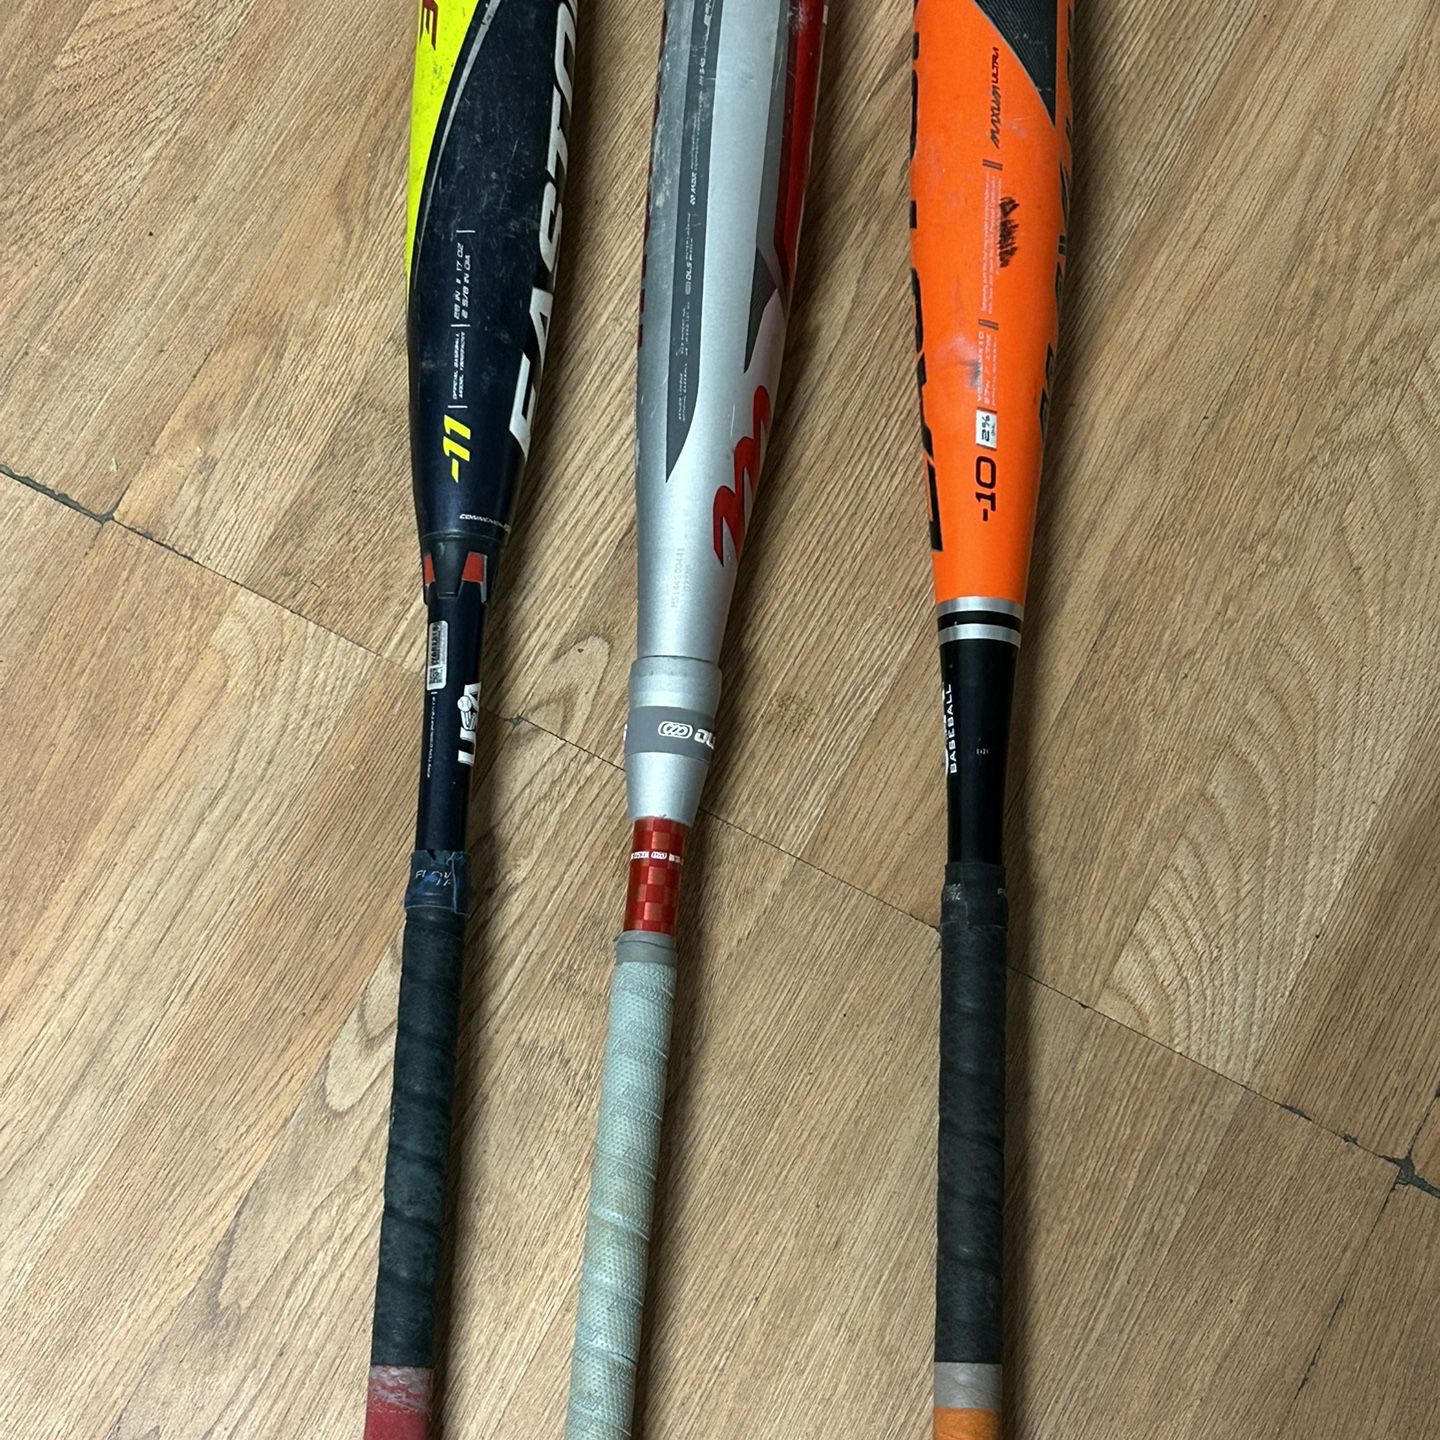 Baseball Bats 